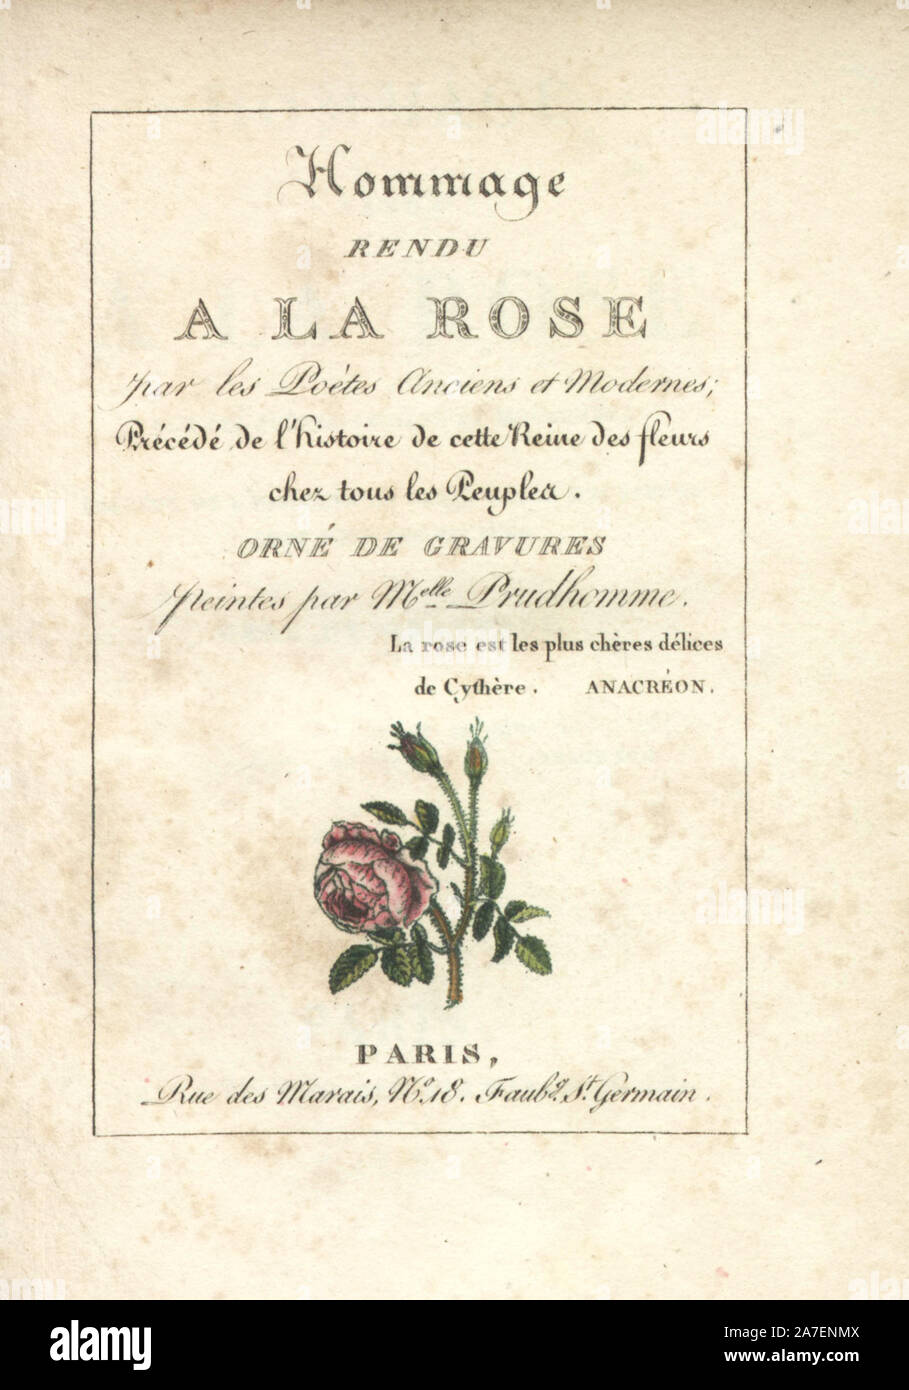 Page de titre calligraphique copperplate coloriée avec vignette gravée d'un moss rose par Mlle. Prudhomme de 'Hommage à la Rose,' Paris, vers 1815. Un livre cadeau avec l'histoire de la rose et une douzaine de figurines de botanique. Banque D'Images